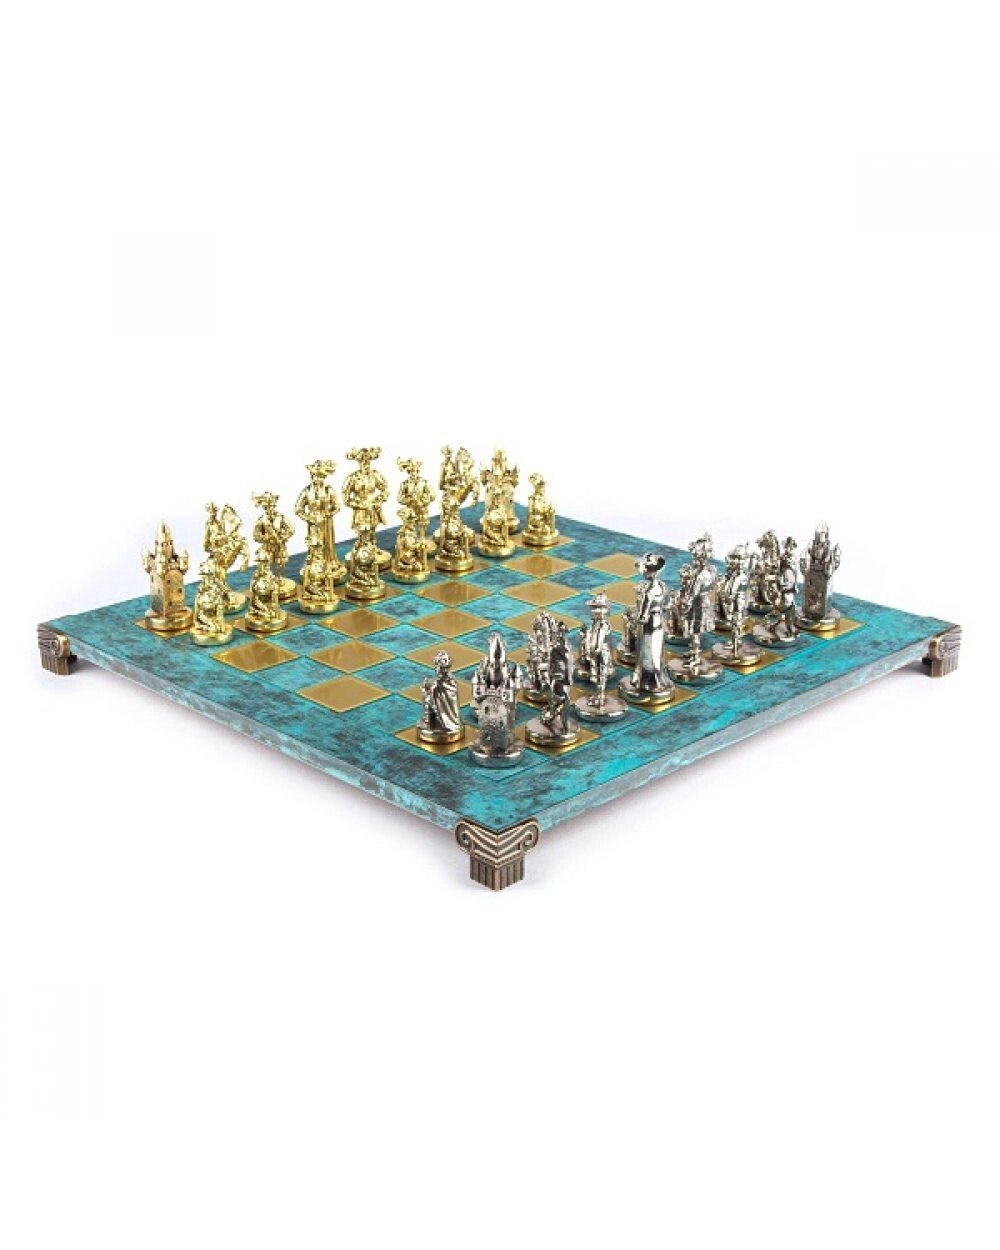 Металеві шахи Manopoulos "Середньовічні лицарі" із золотими та срібними шаховими фігурами та шаховою дошкою 44 см від компанії "Cronos" поза часом - фото 1